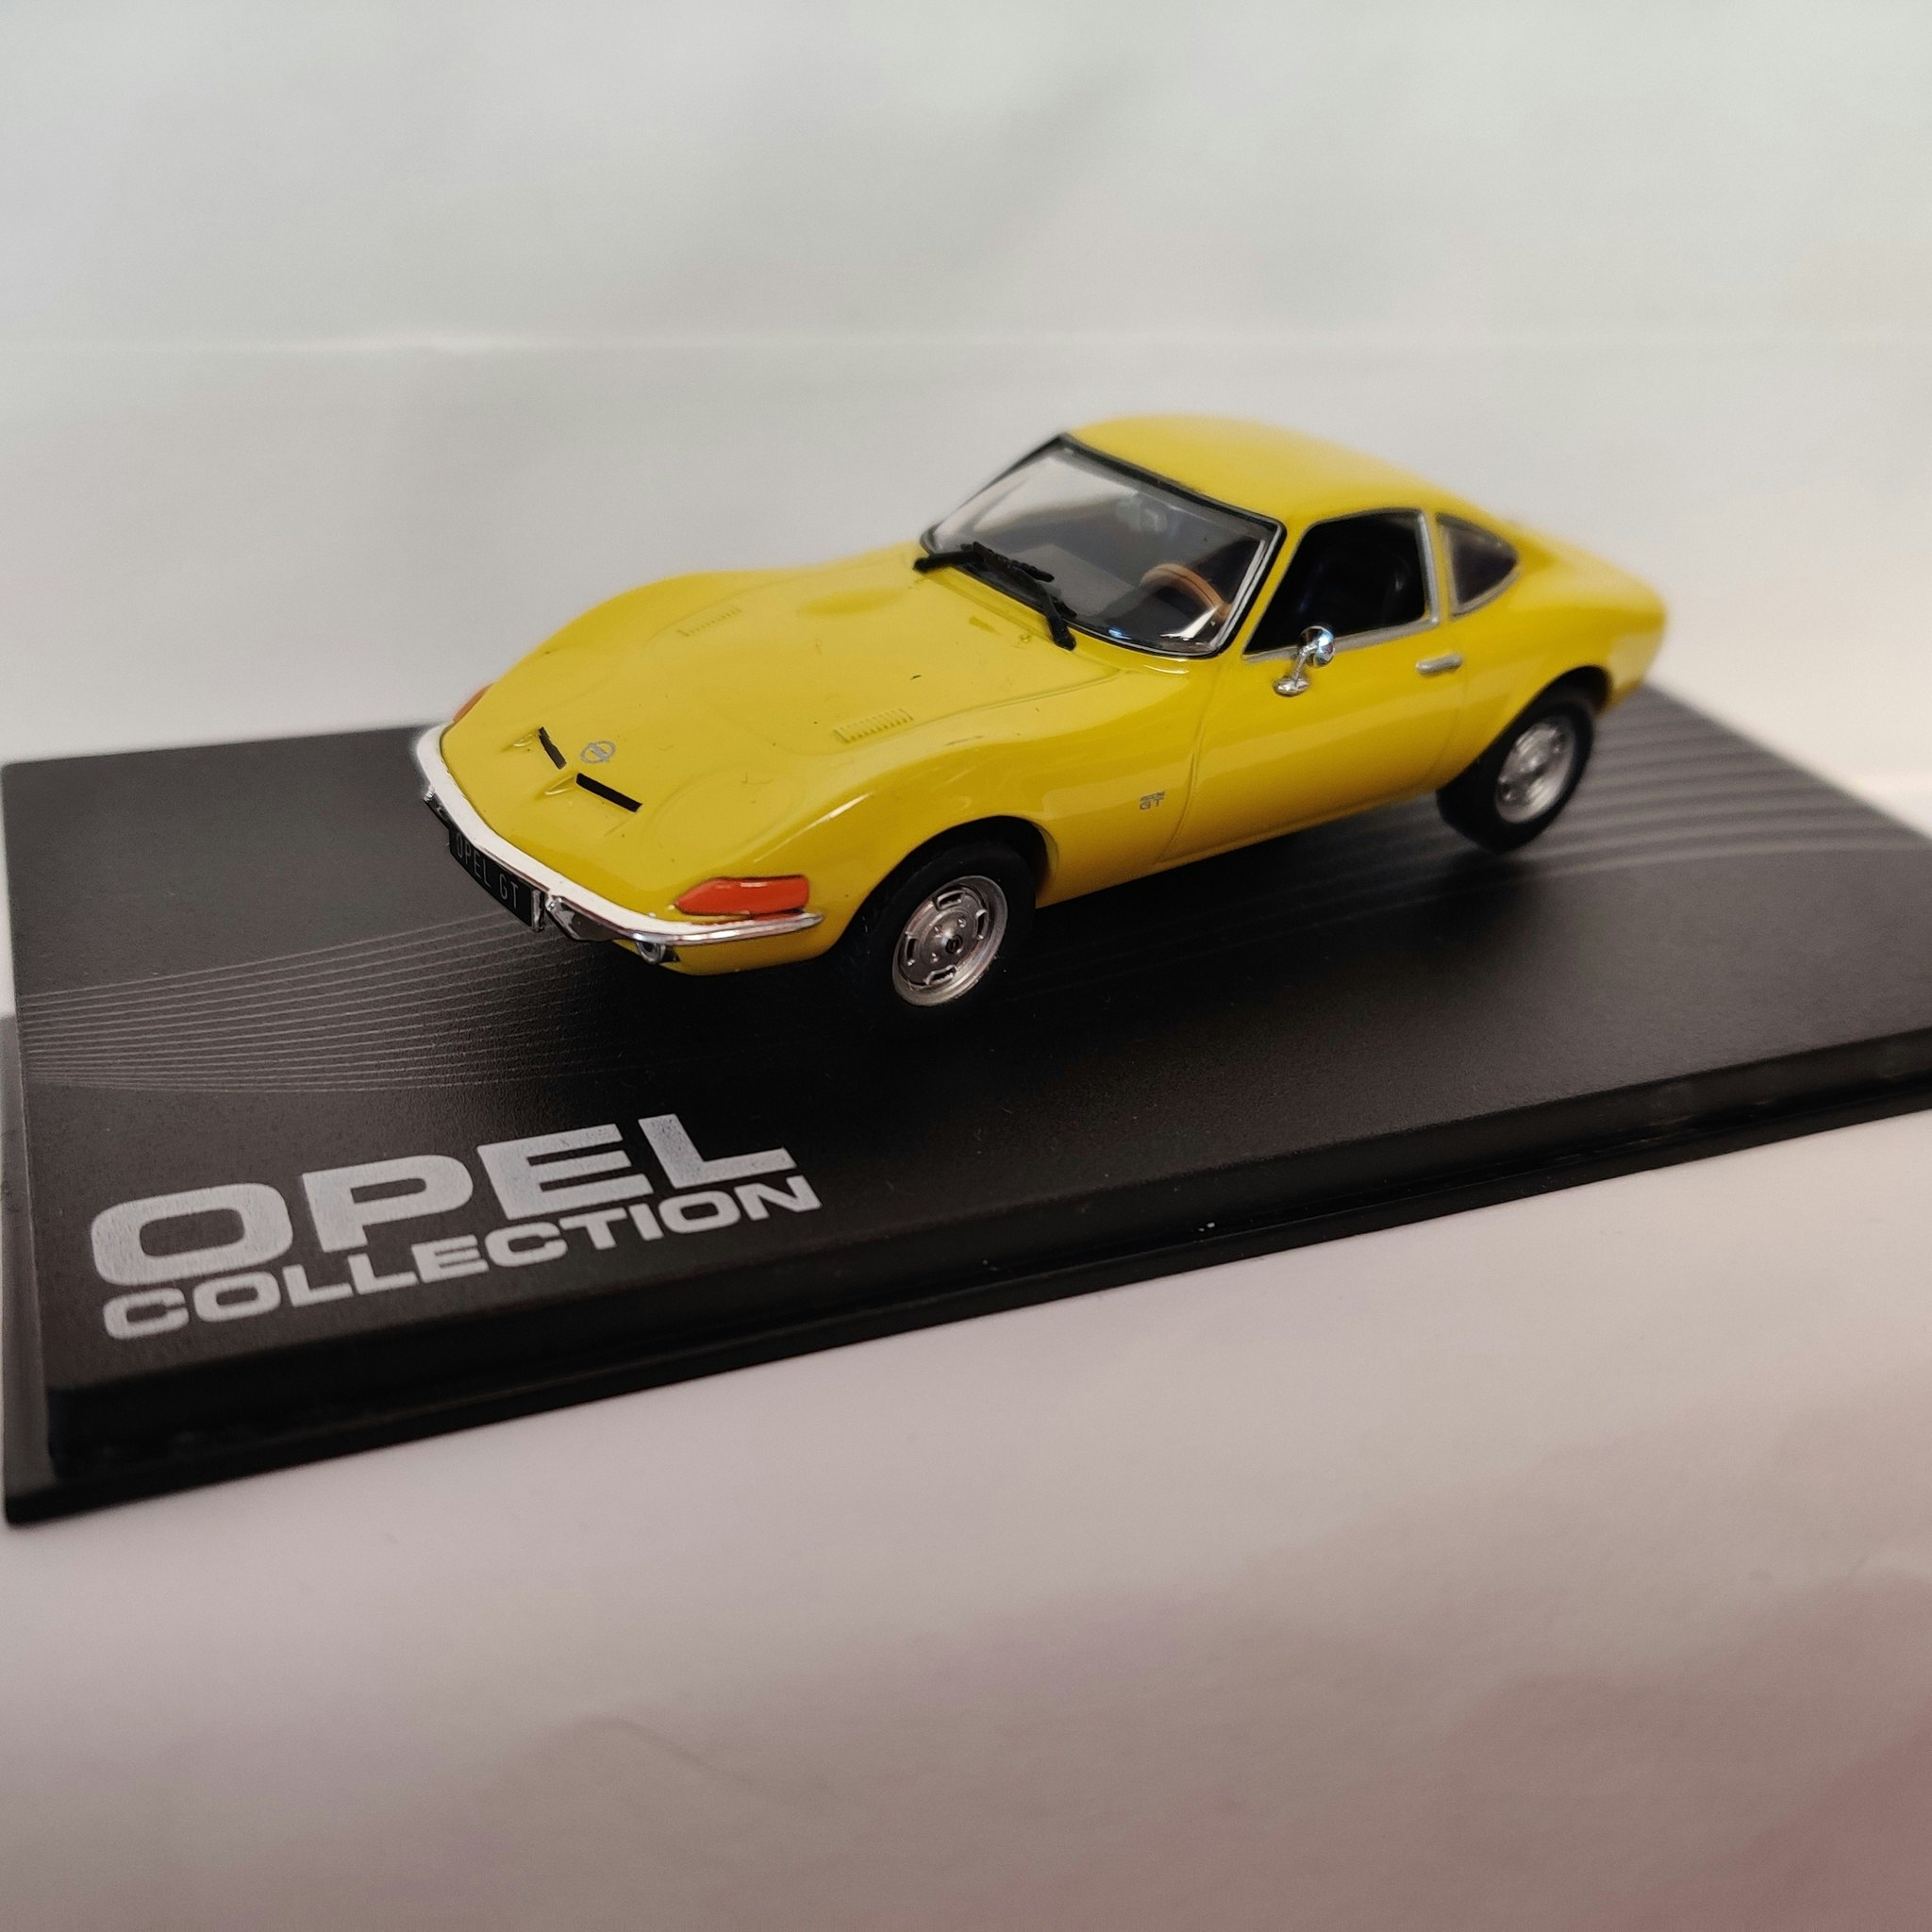 Skala 1/43 - Opel GT 1968-1973, Opel Collection